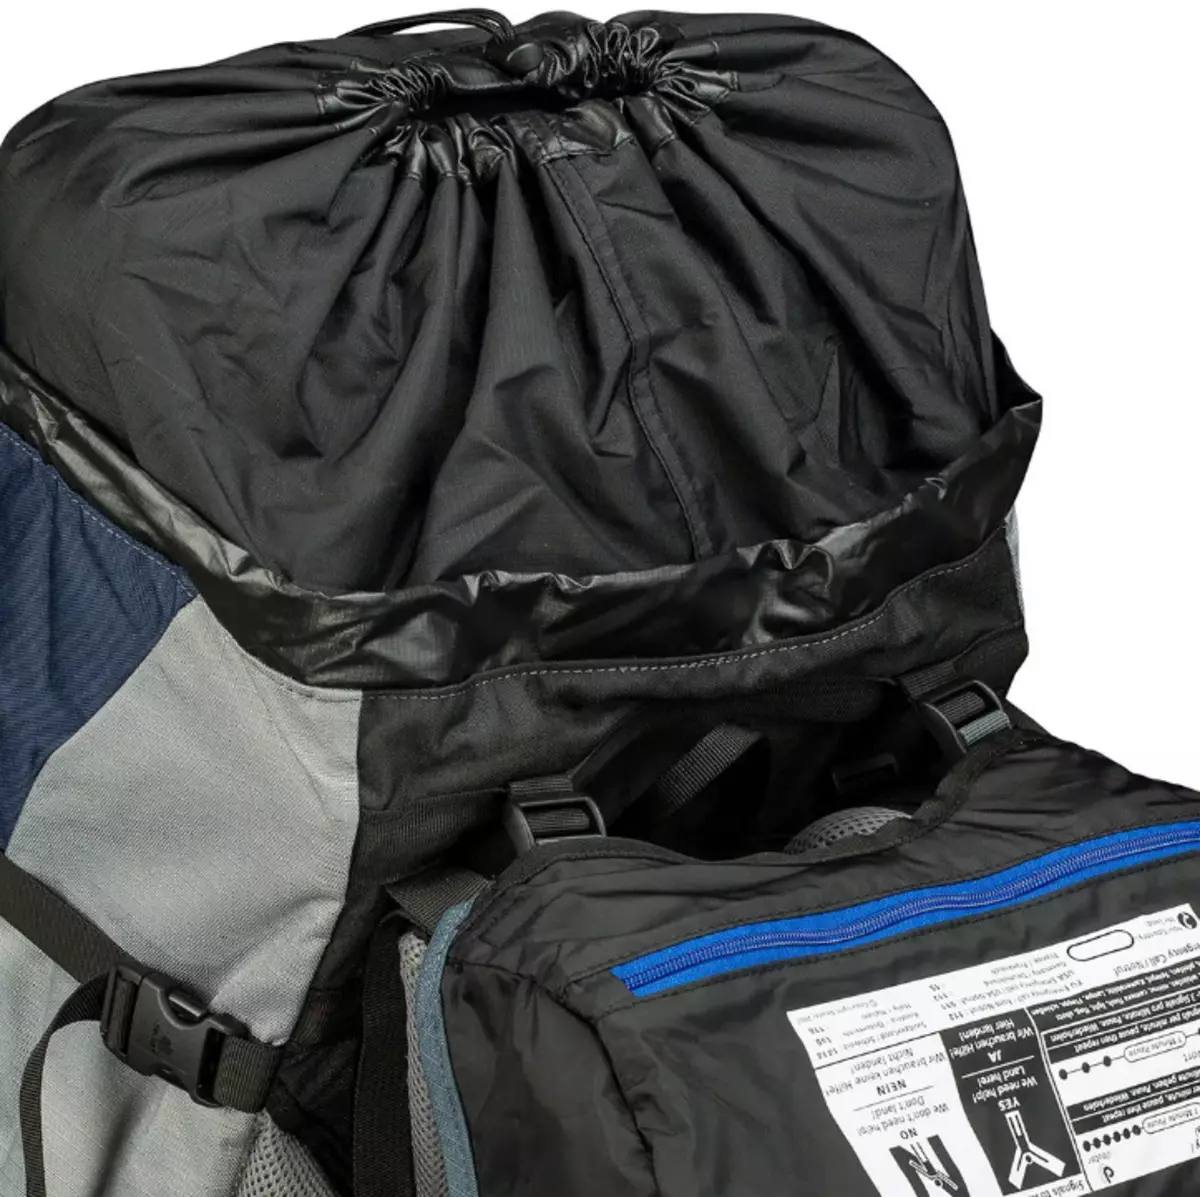 Backpacks kbar: backpacks tan-nisa moda u maskili b'volum kbir. Ħarsa ġenerali lejn mudelli aħjar durabbli u spazjużi, sbieħ u ħfief 2545_32